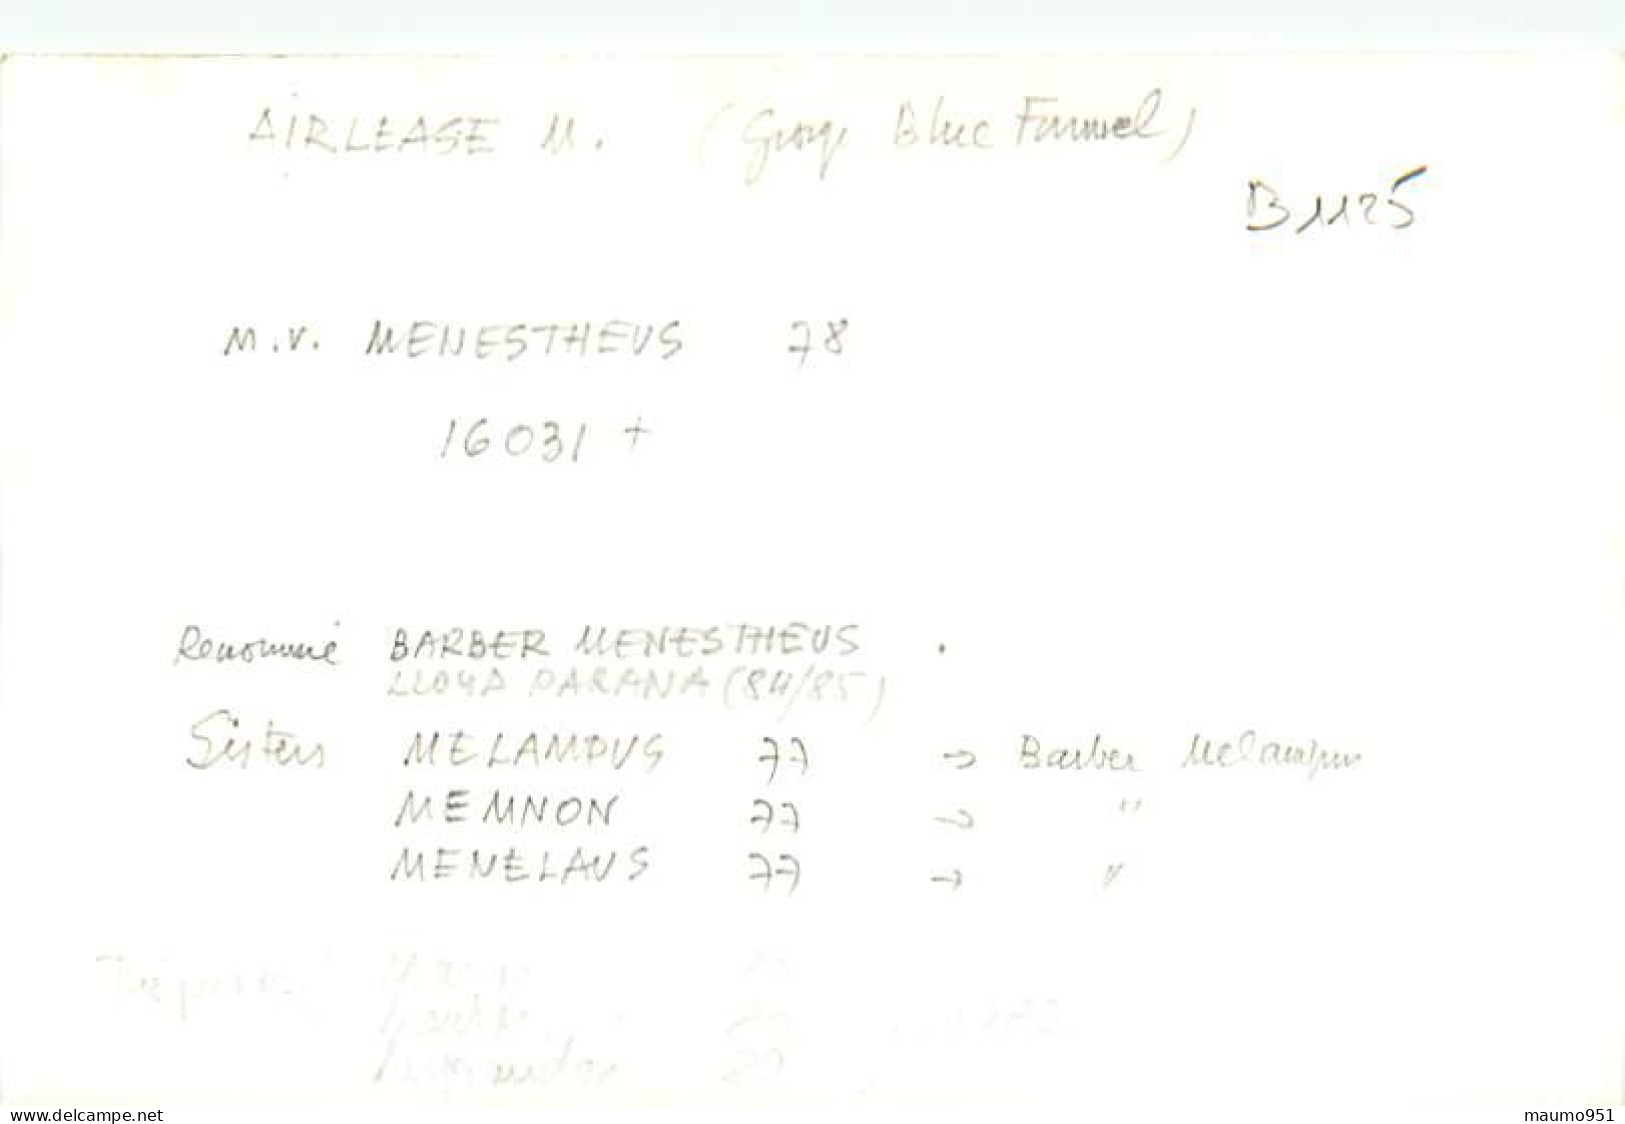 1125 CLICHE BATEAU PREFIXE M.V. - LE MENESTHEUS DE 1978 - CATEGORIE 16031 TONNES - FORMAT CPA N° B 1125 - Barche